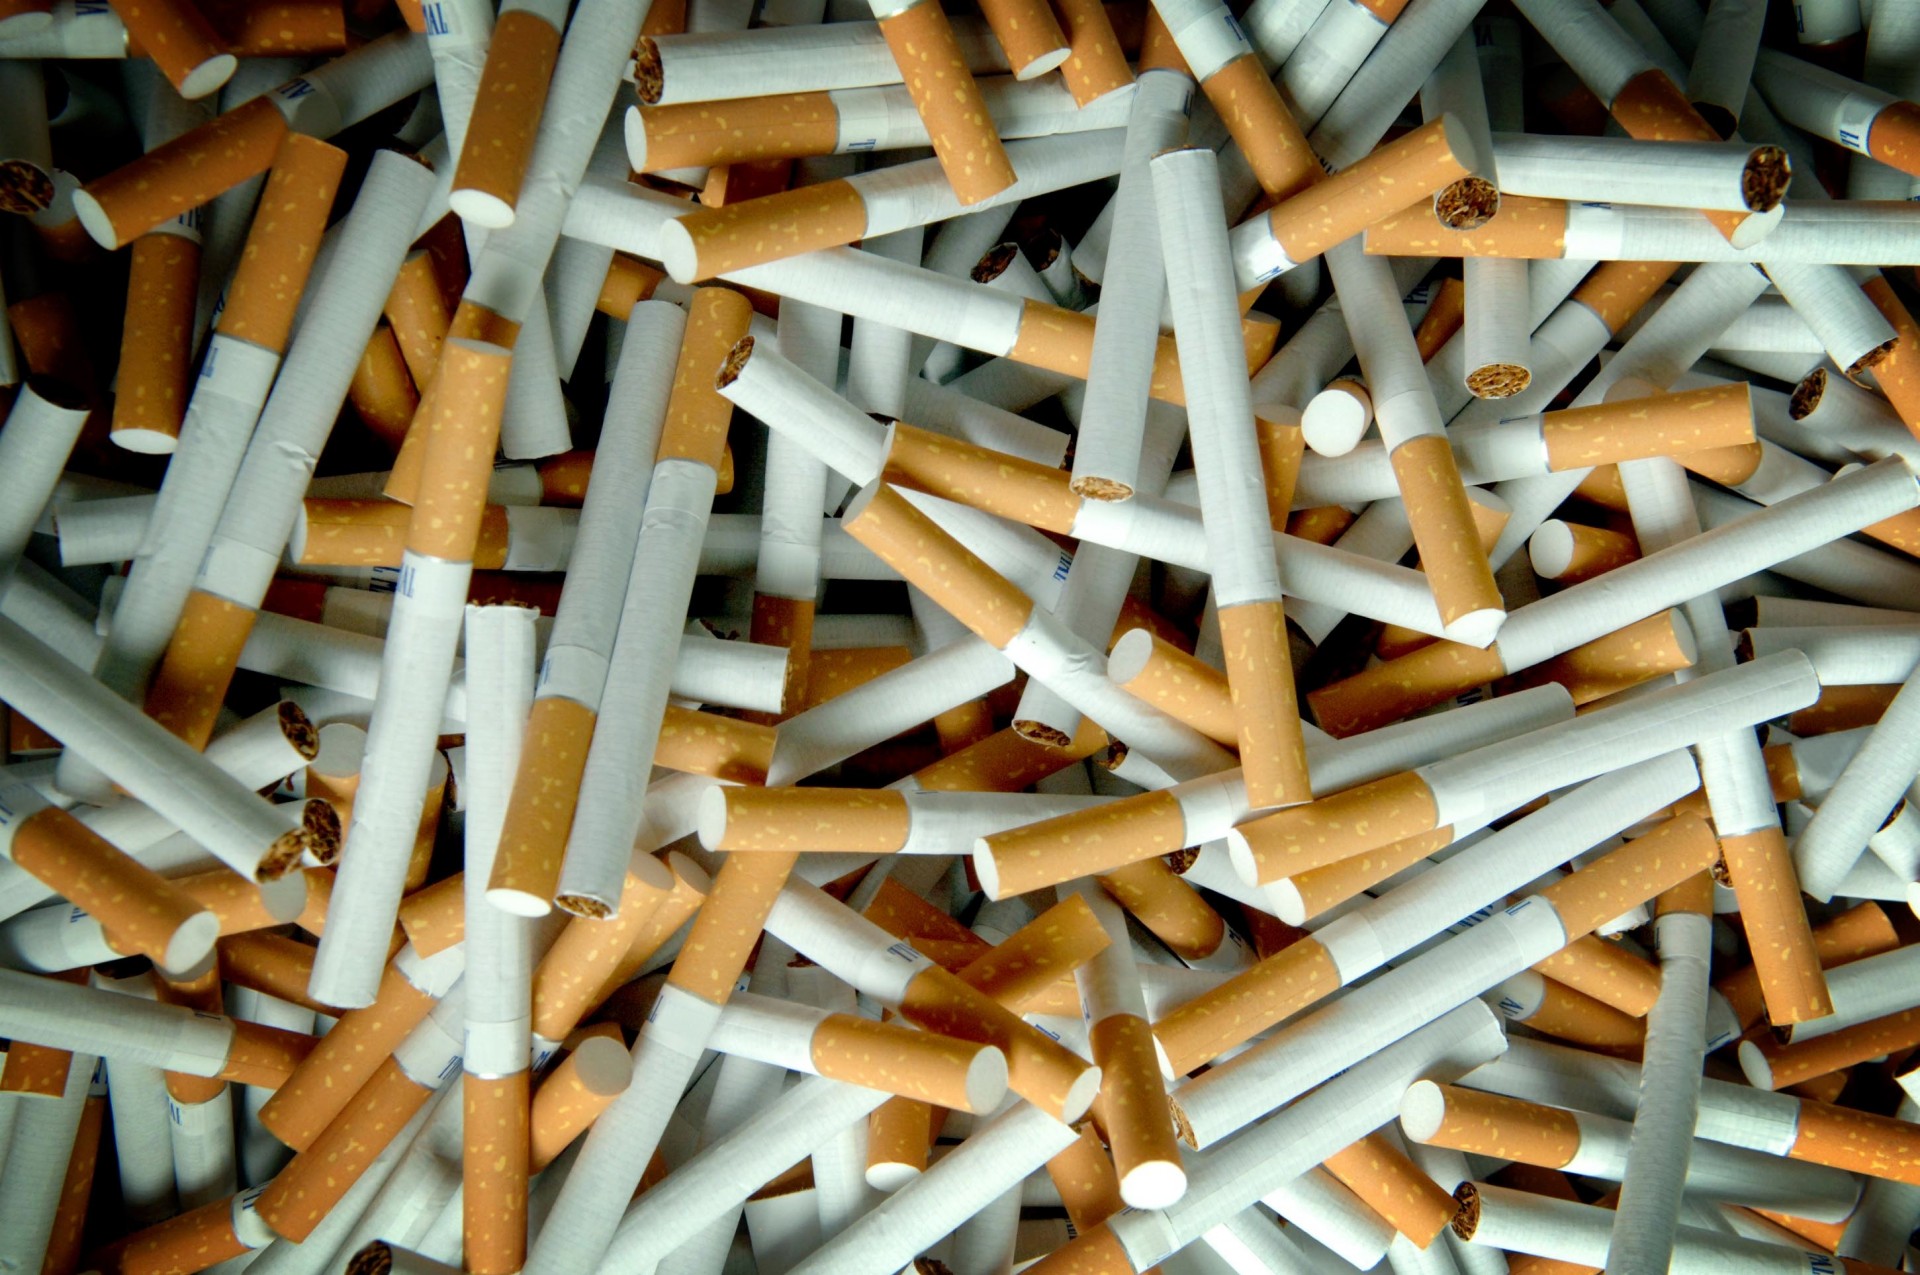 kutiite na cigarite so pogolemi i postrashni sliki i so zabrana za dodavanje aromi